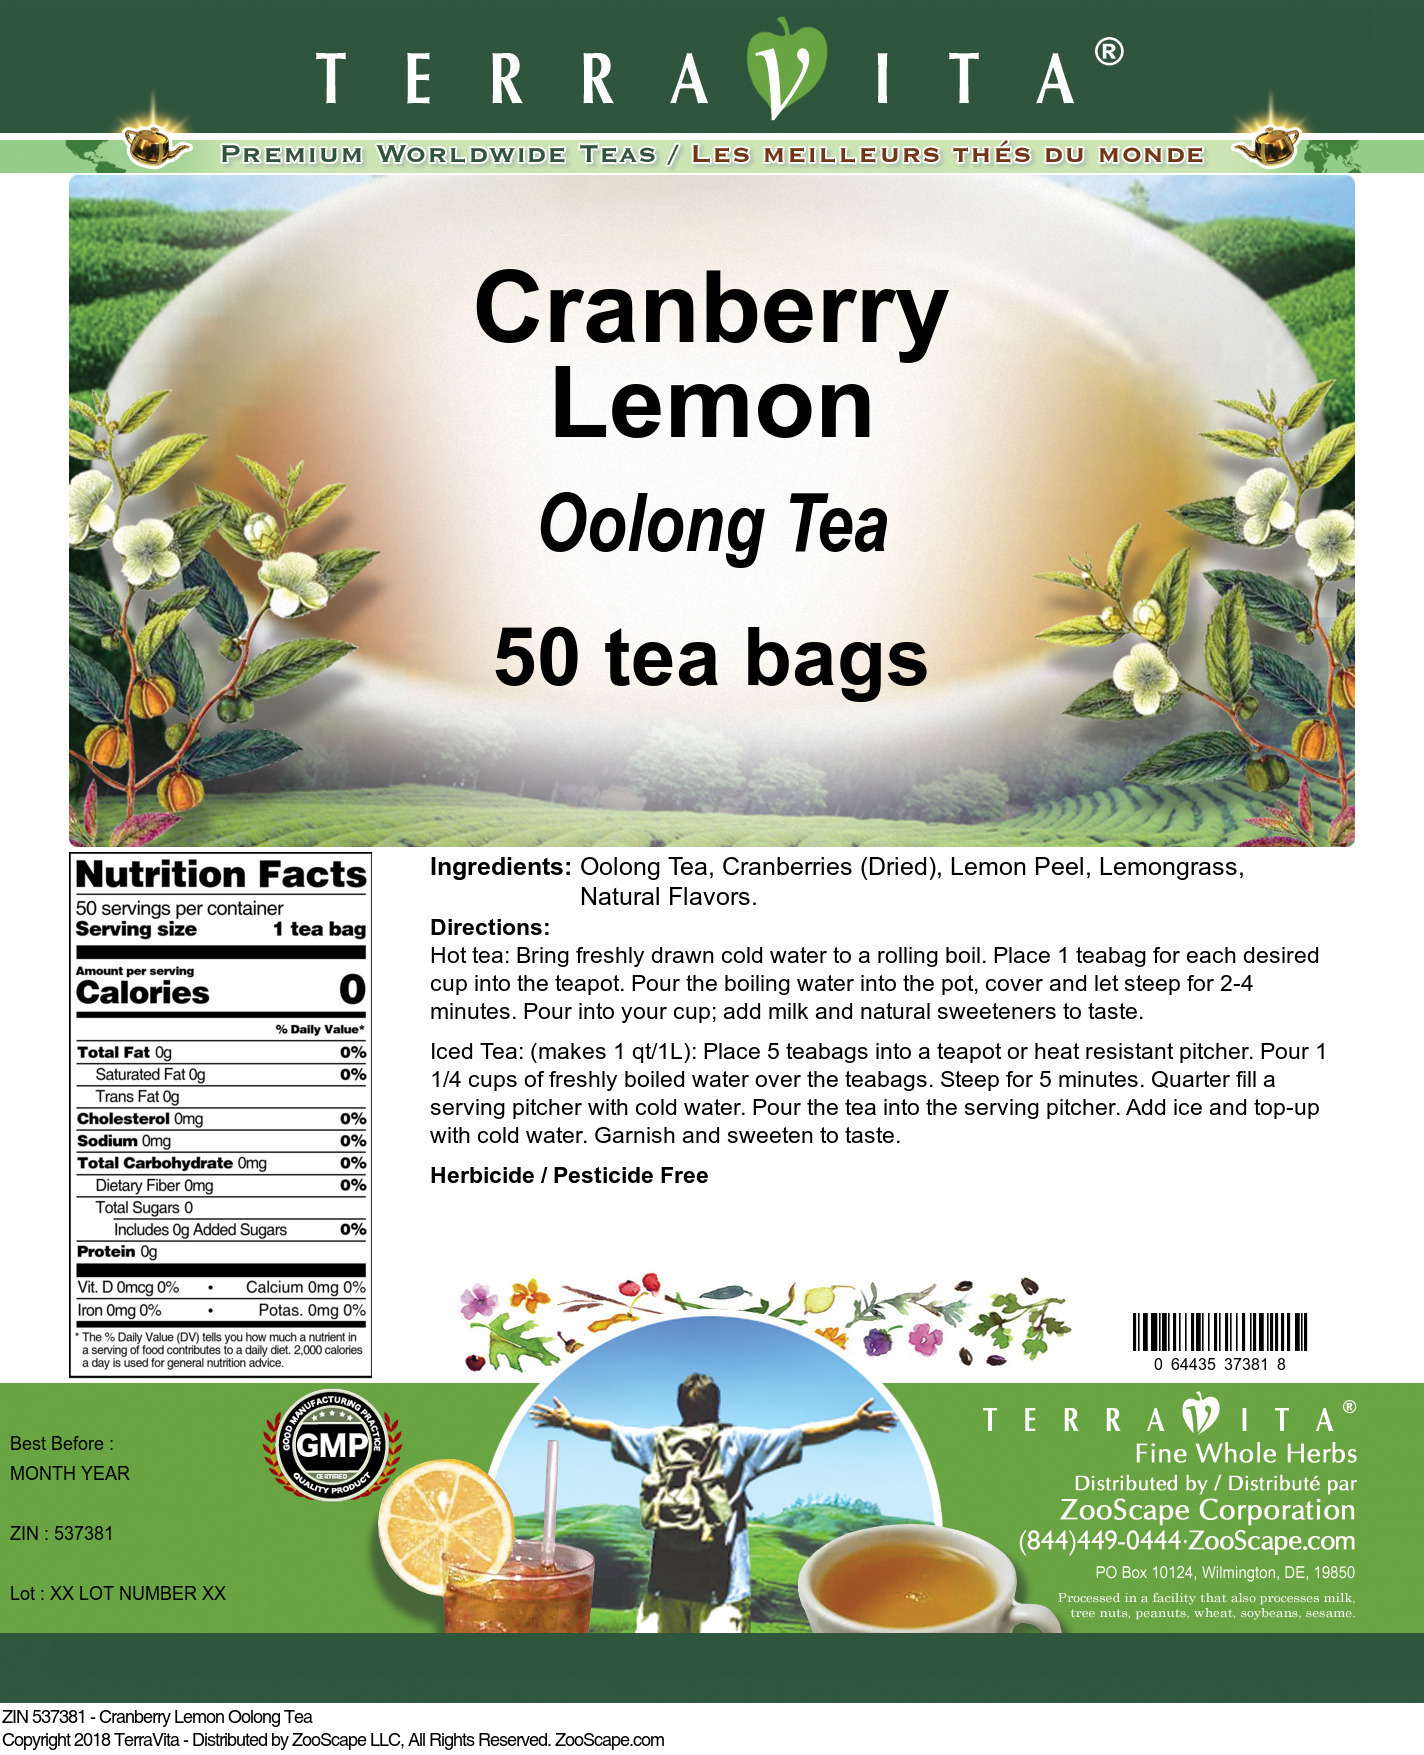 Cranberry Lemon Oolong Tea - Label